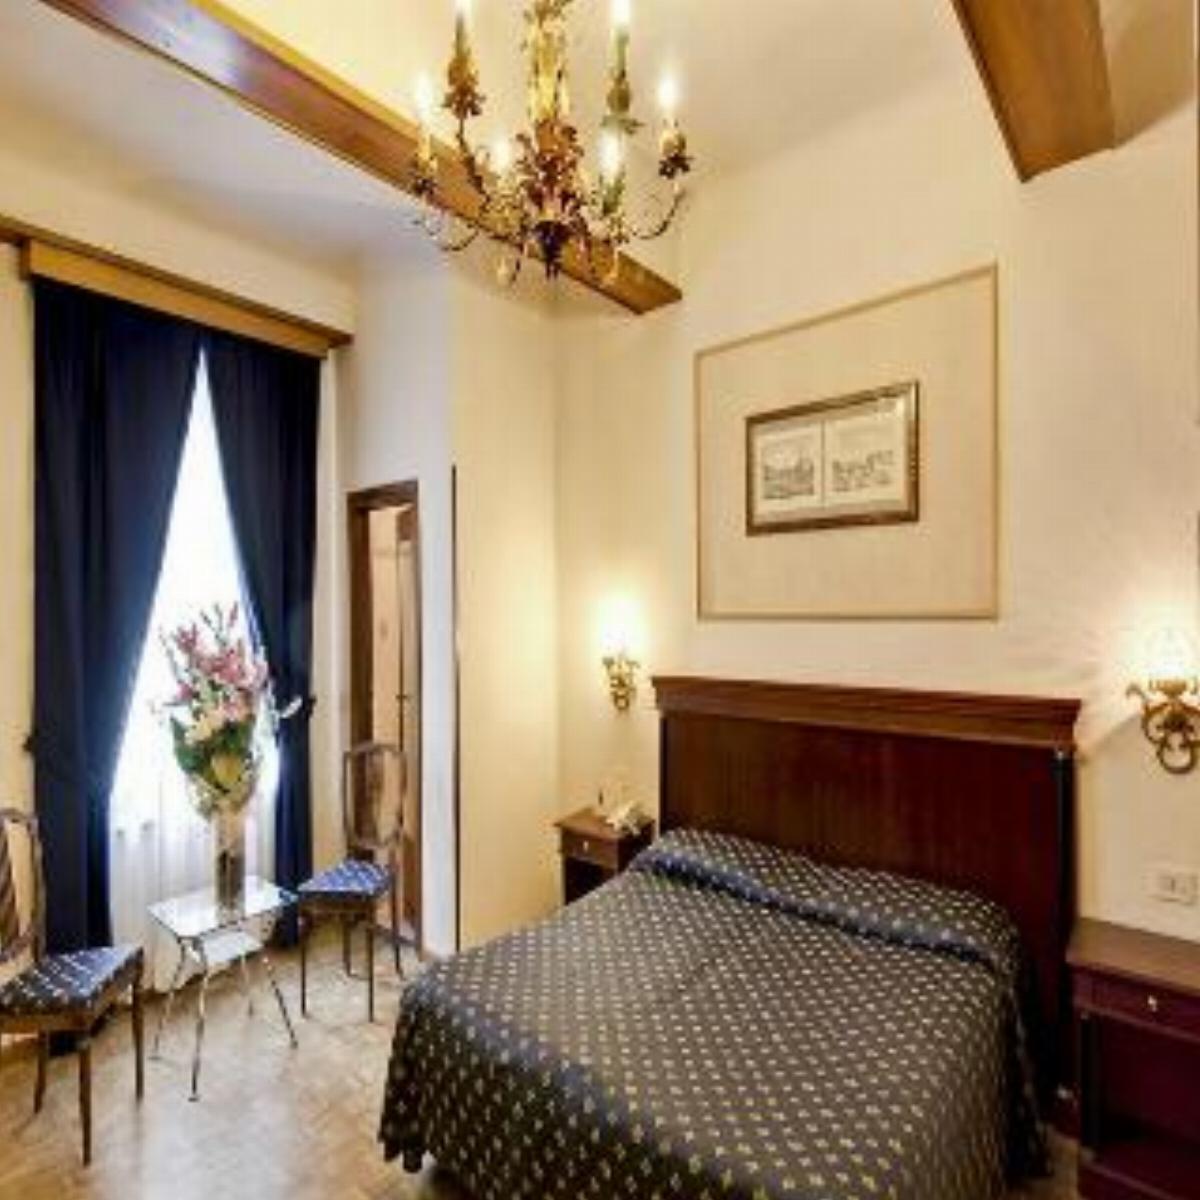 Hotel Martelli Hotel Florence Italy